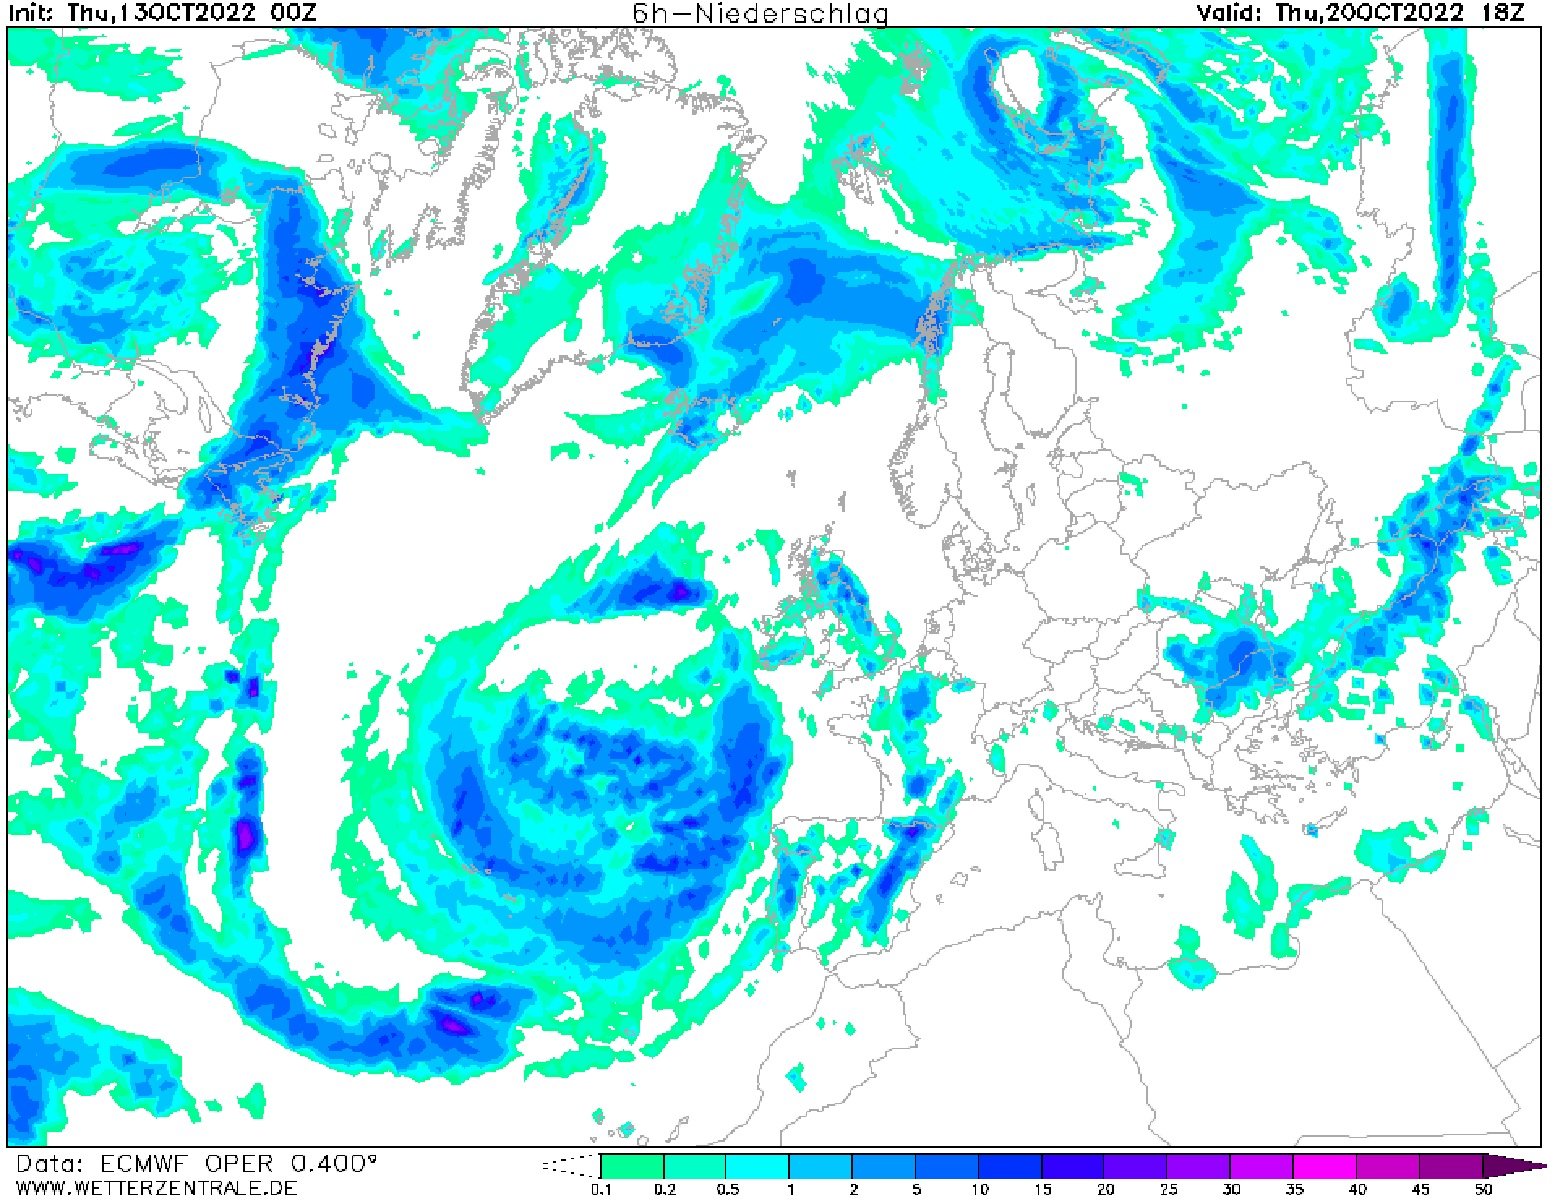 La previsión del tiempo anuncia lluvias jueves, 20 de octubre ECMWF Wetterzentrale